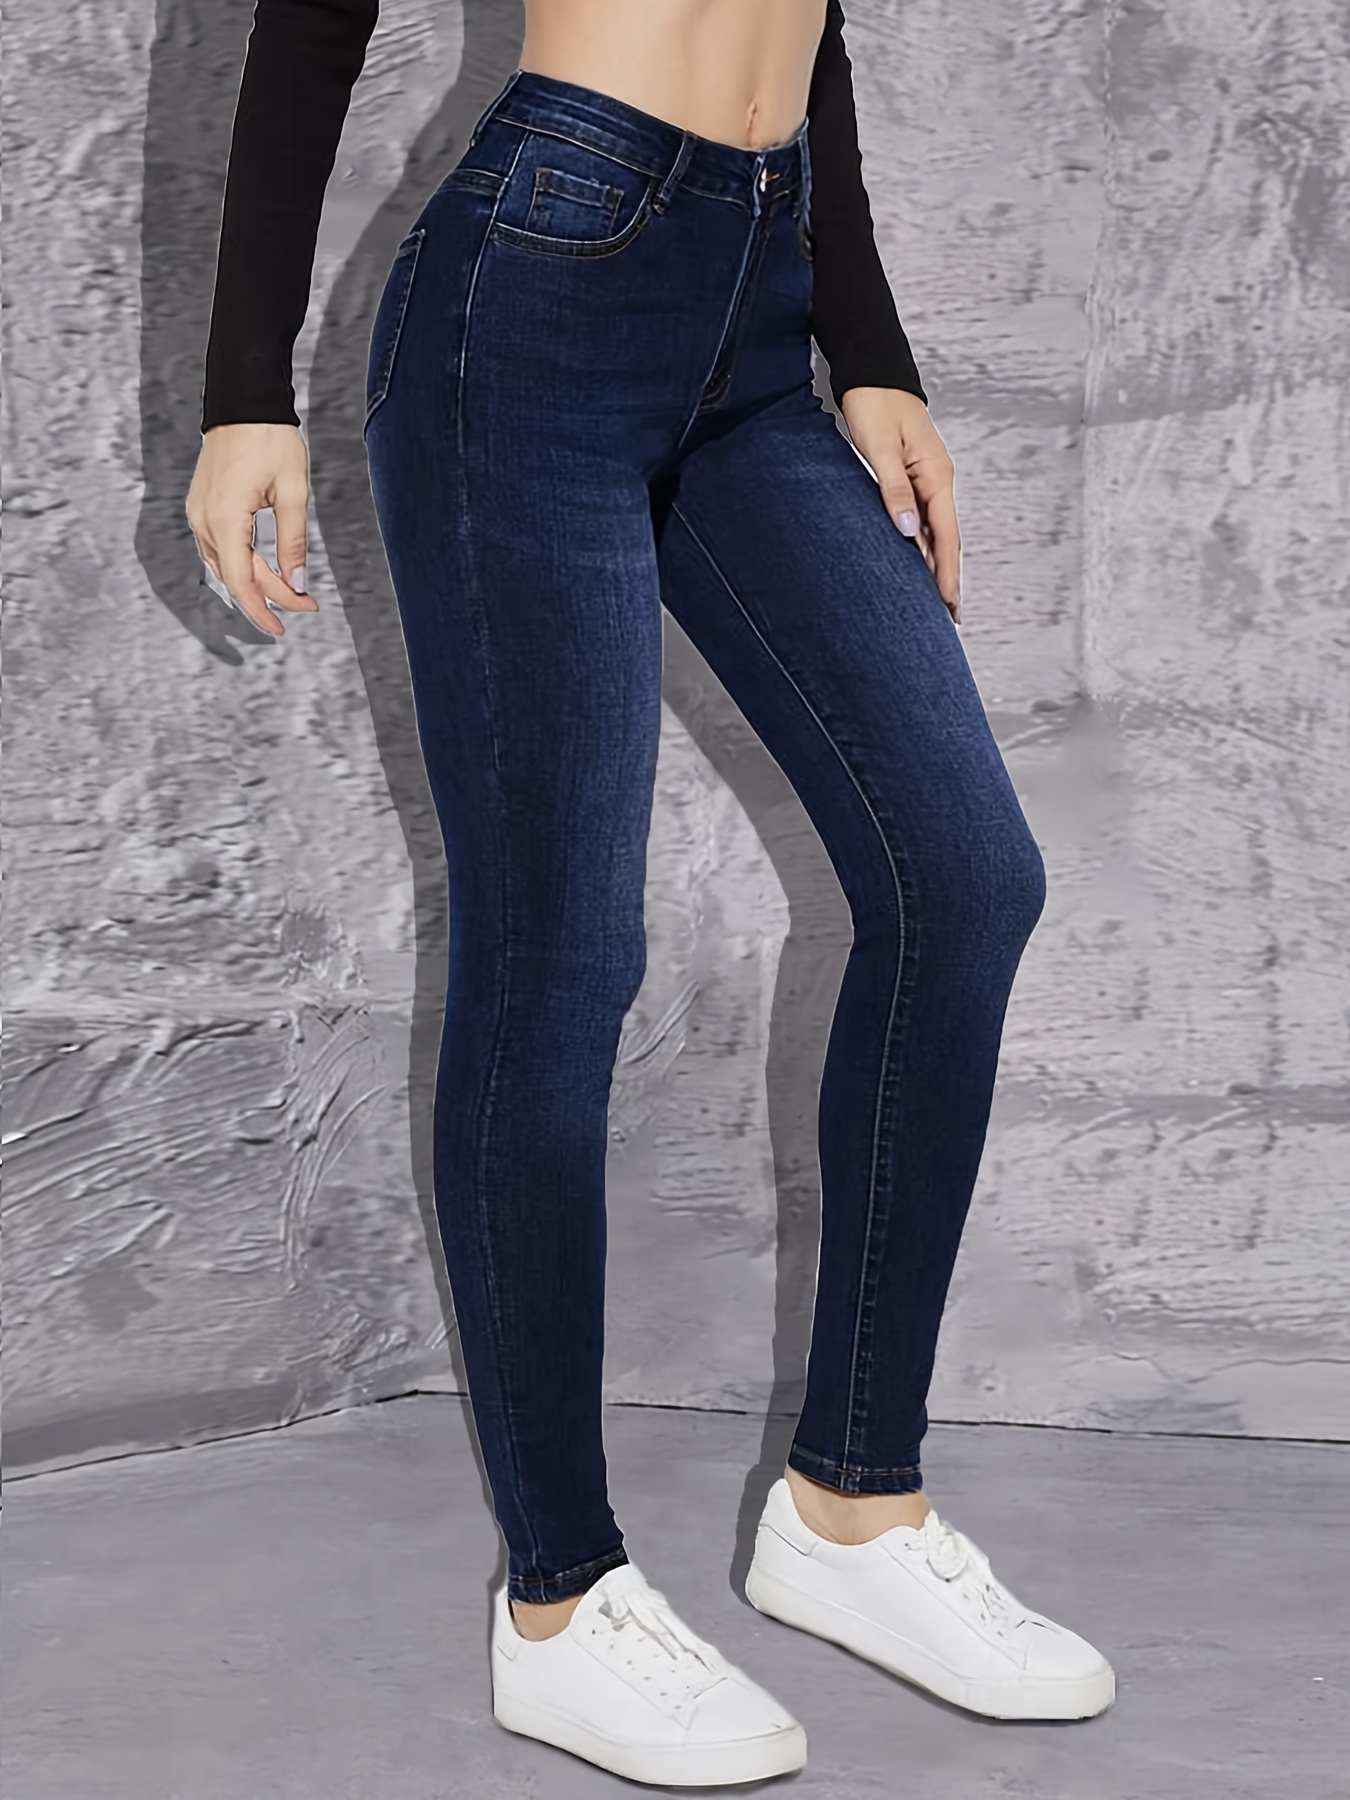 Jeans skinny * escuro de cintura alta, cintura alta, design liso, elástico,  ajuste justo, calças jeans femininas e roupas